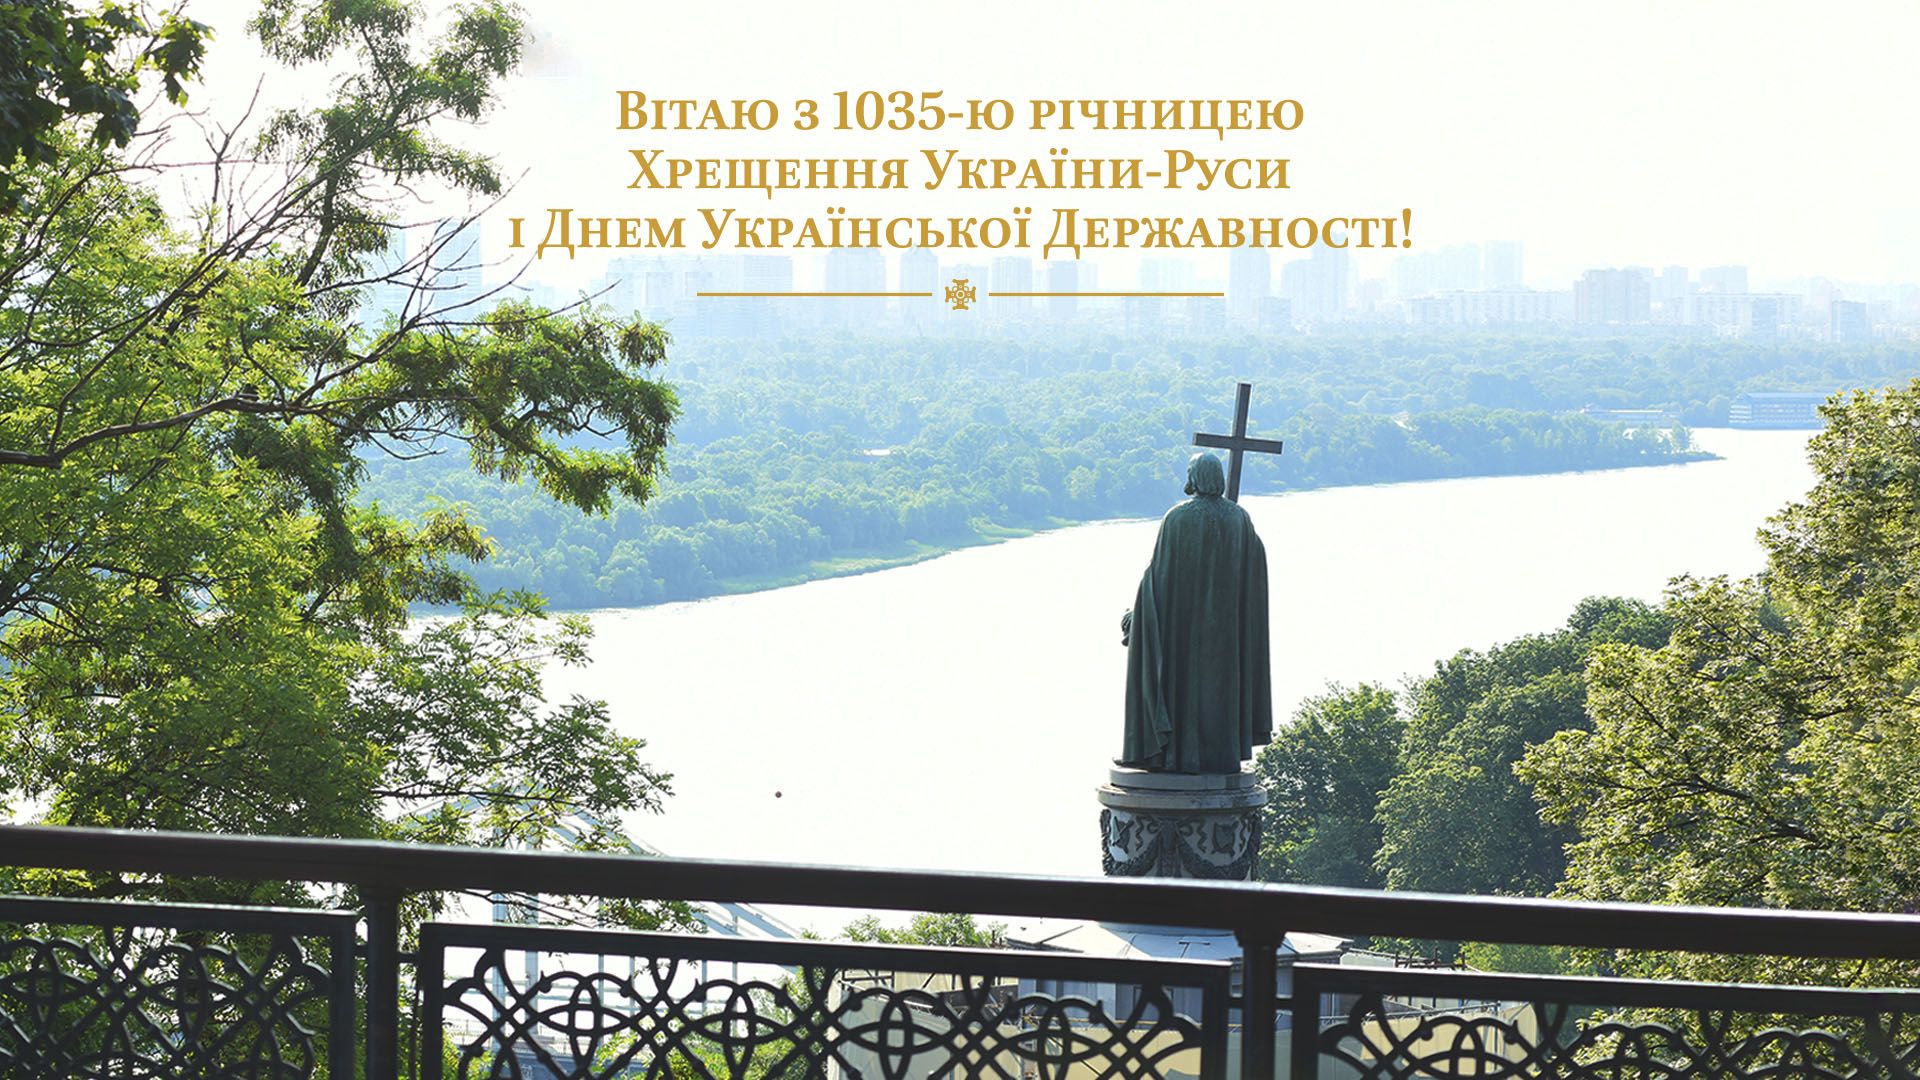 1035-та річниця Хрещення України-Руси: з Богом – до перемоги!